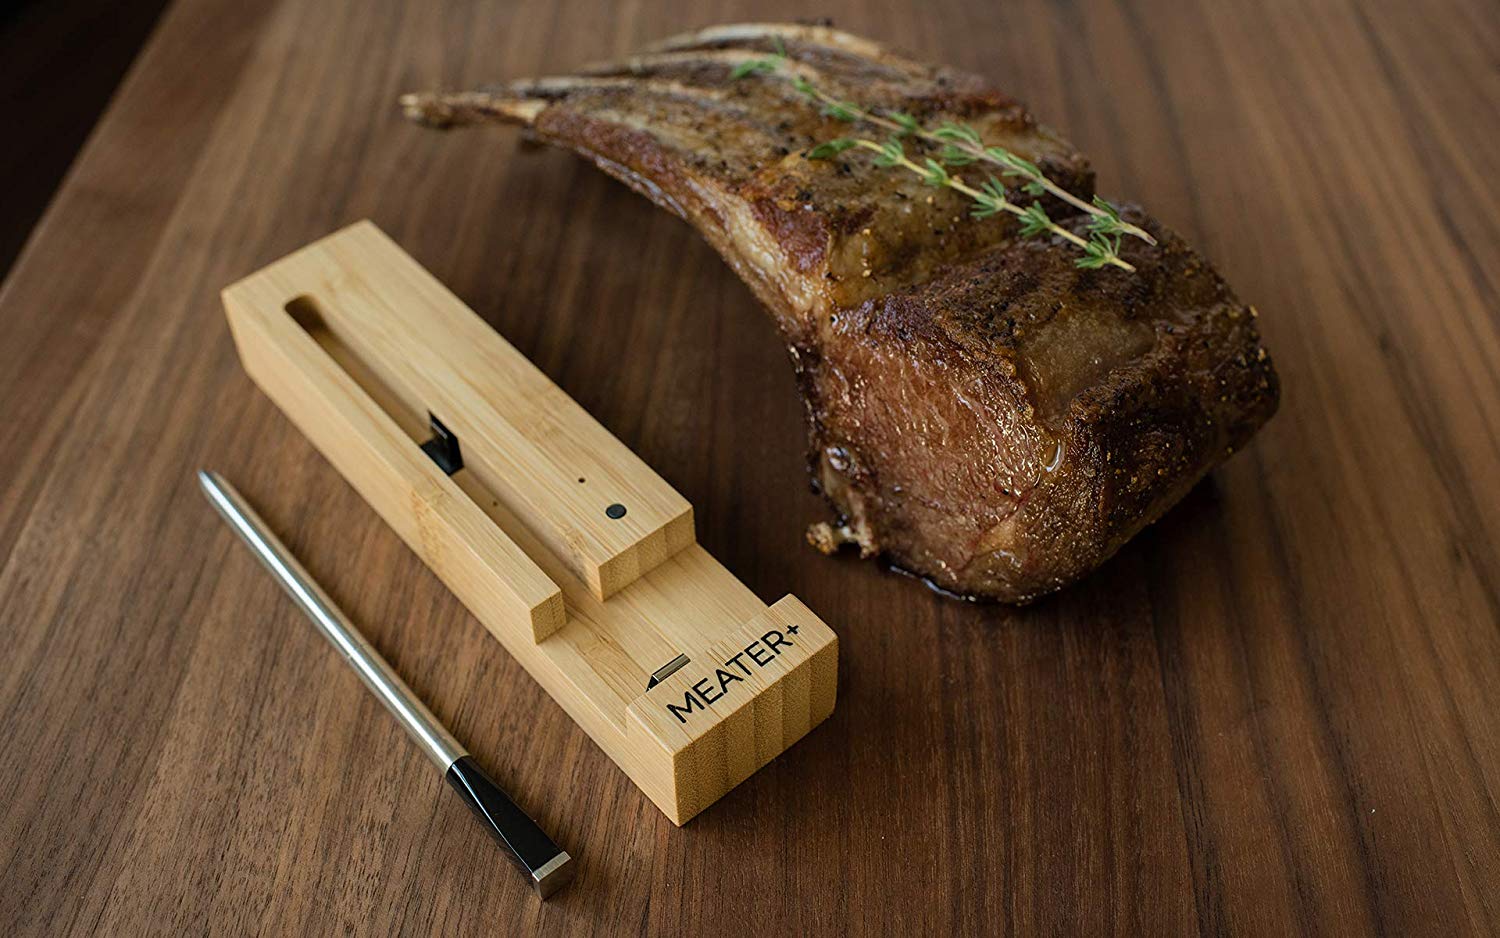 Meater+ 50m Le thermomètre intelligent longue portée    - Meater - Thermomètre à viande - 